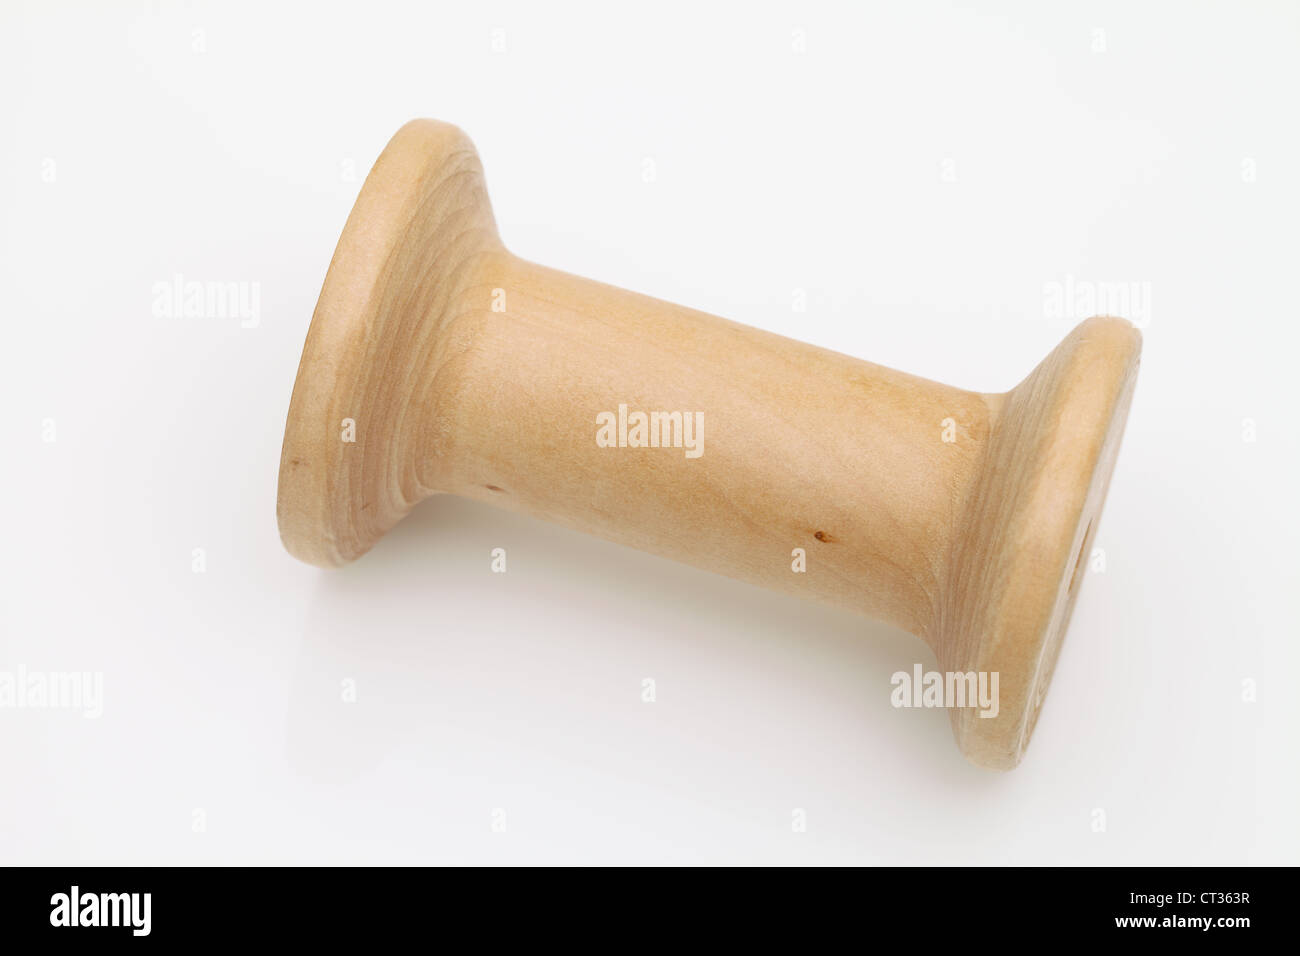 Empty wooden spool Stock Photo